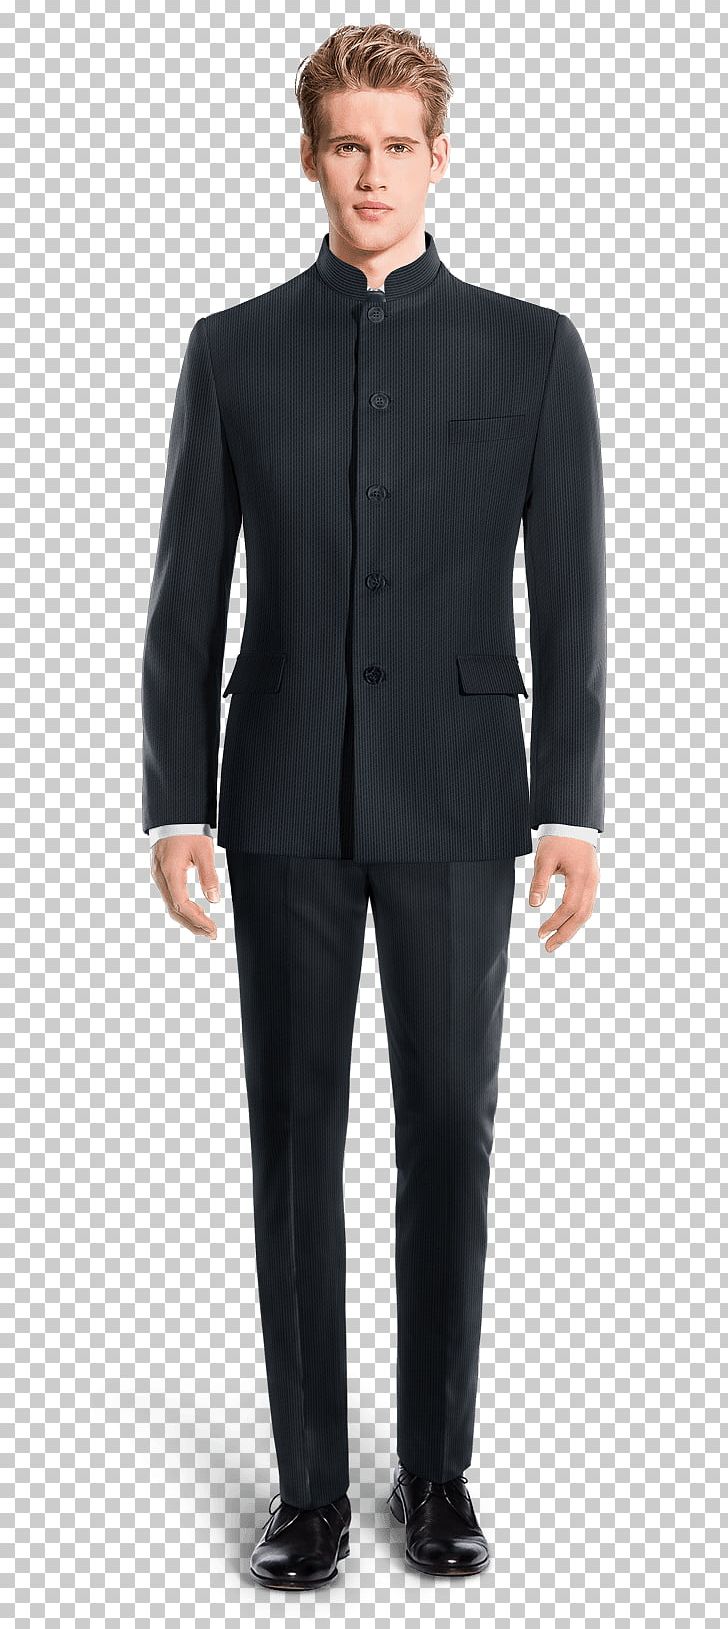 Suit Pants Tuxedo Corduroy Black Tie PNG, Clipart, Black, Black Tie, Blazer, Blue, Businessperson Free PNG Download